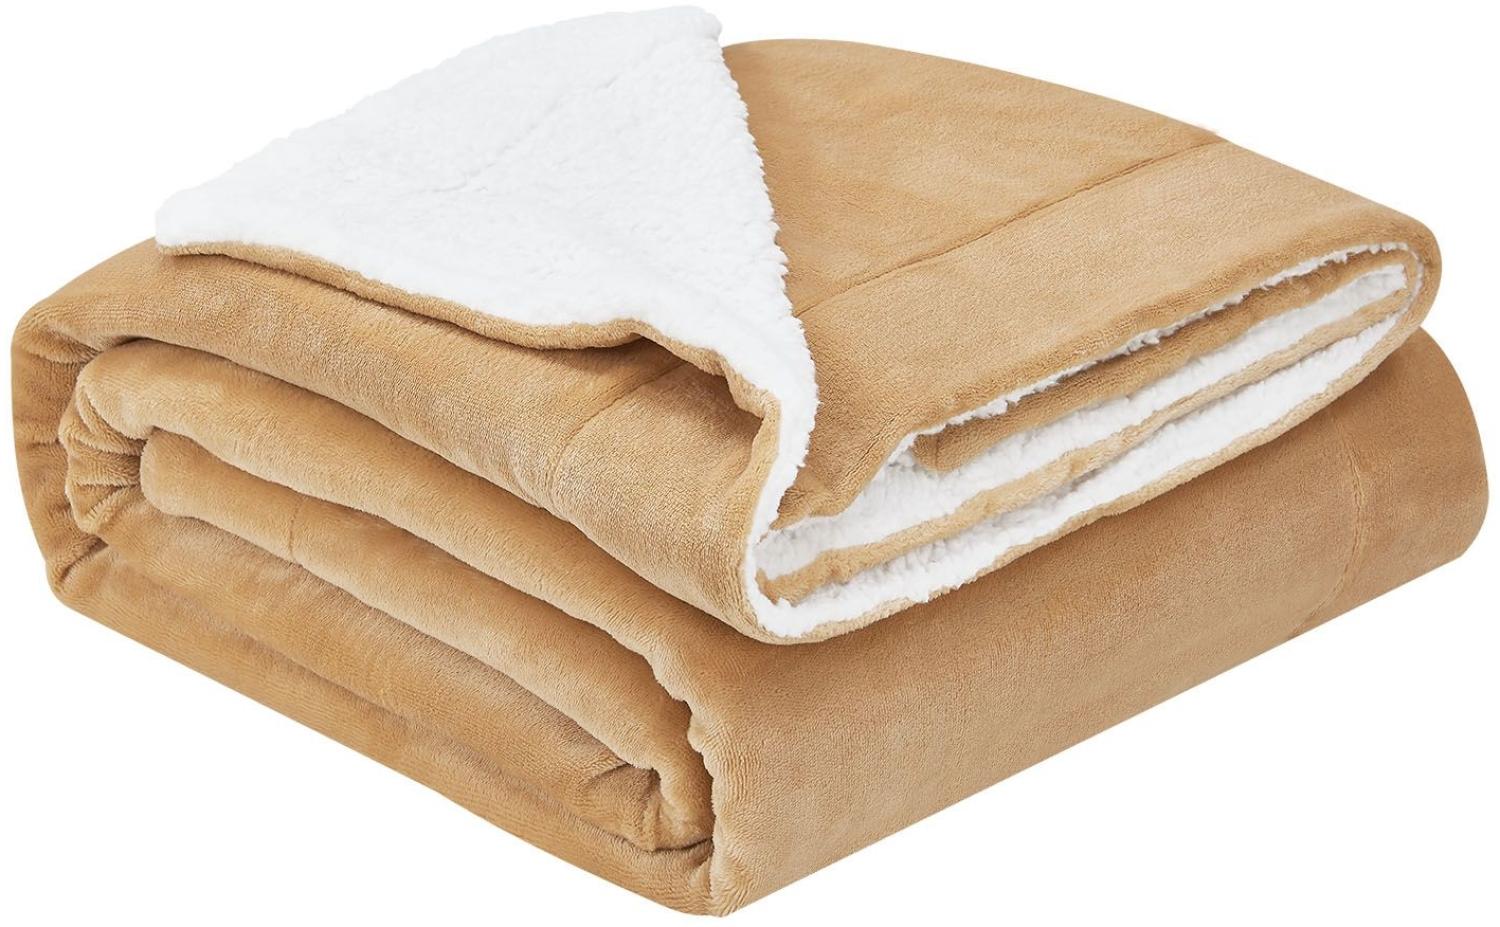 Juskys Fleecedecke 150x200 cm mit Sherpa - flauschig, warm, waschbar - Decke für Bett und Couch - Tagesdecke, Kuscheldecke Camel Bild 1